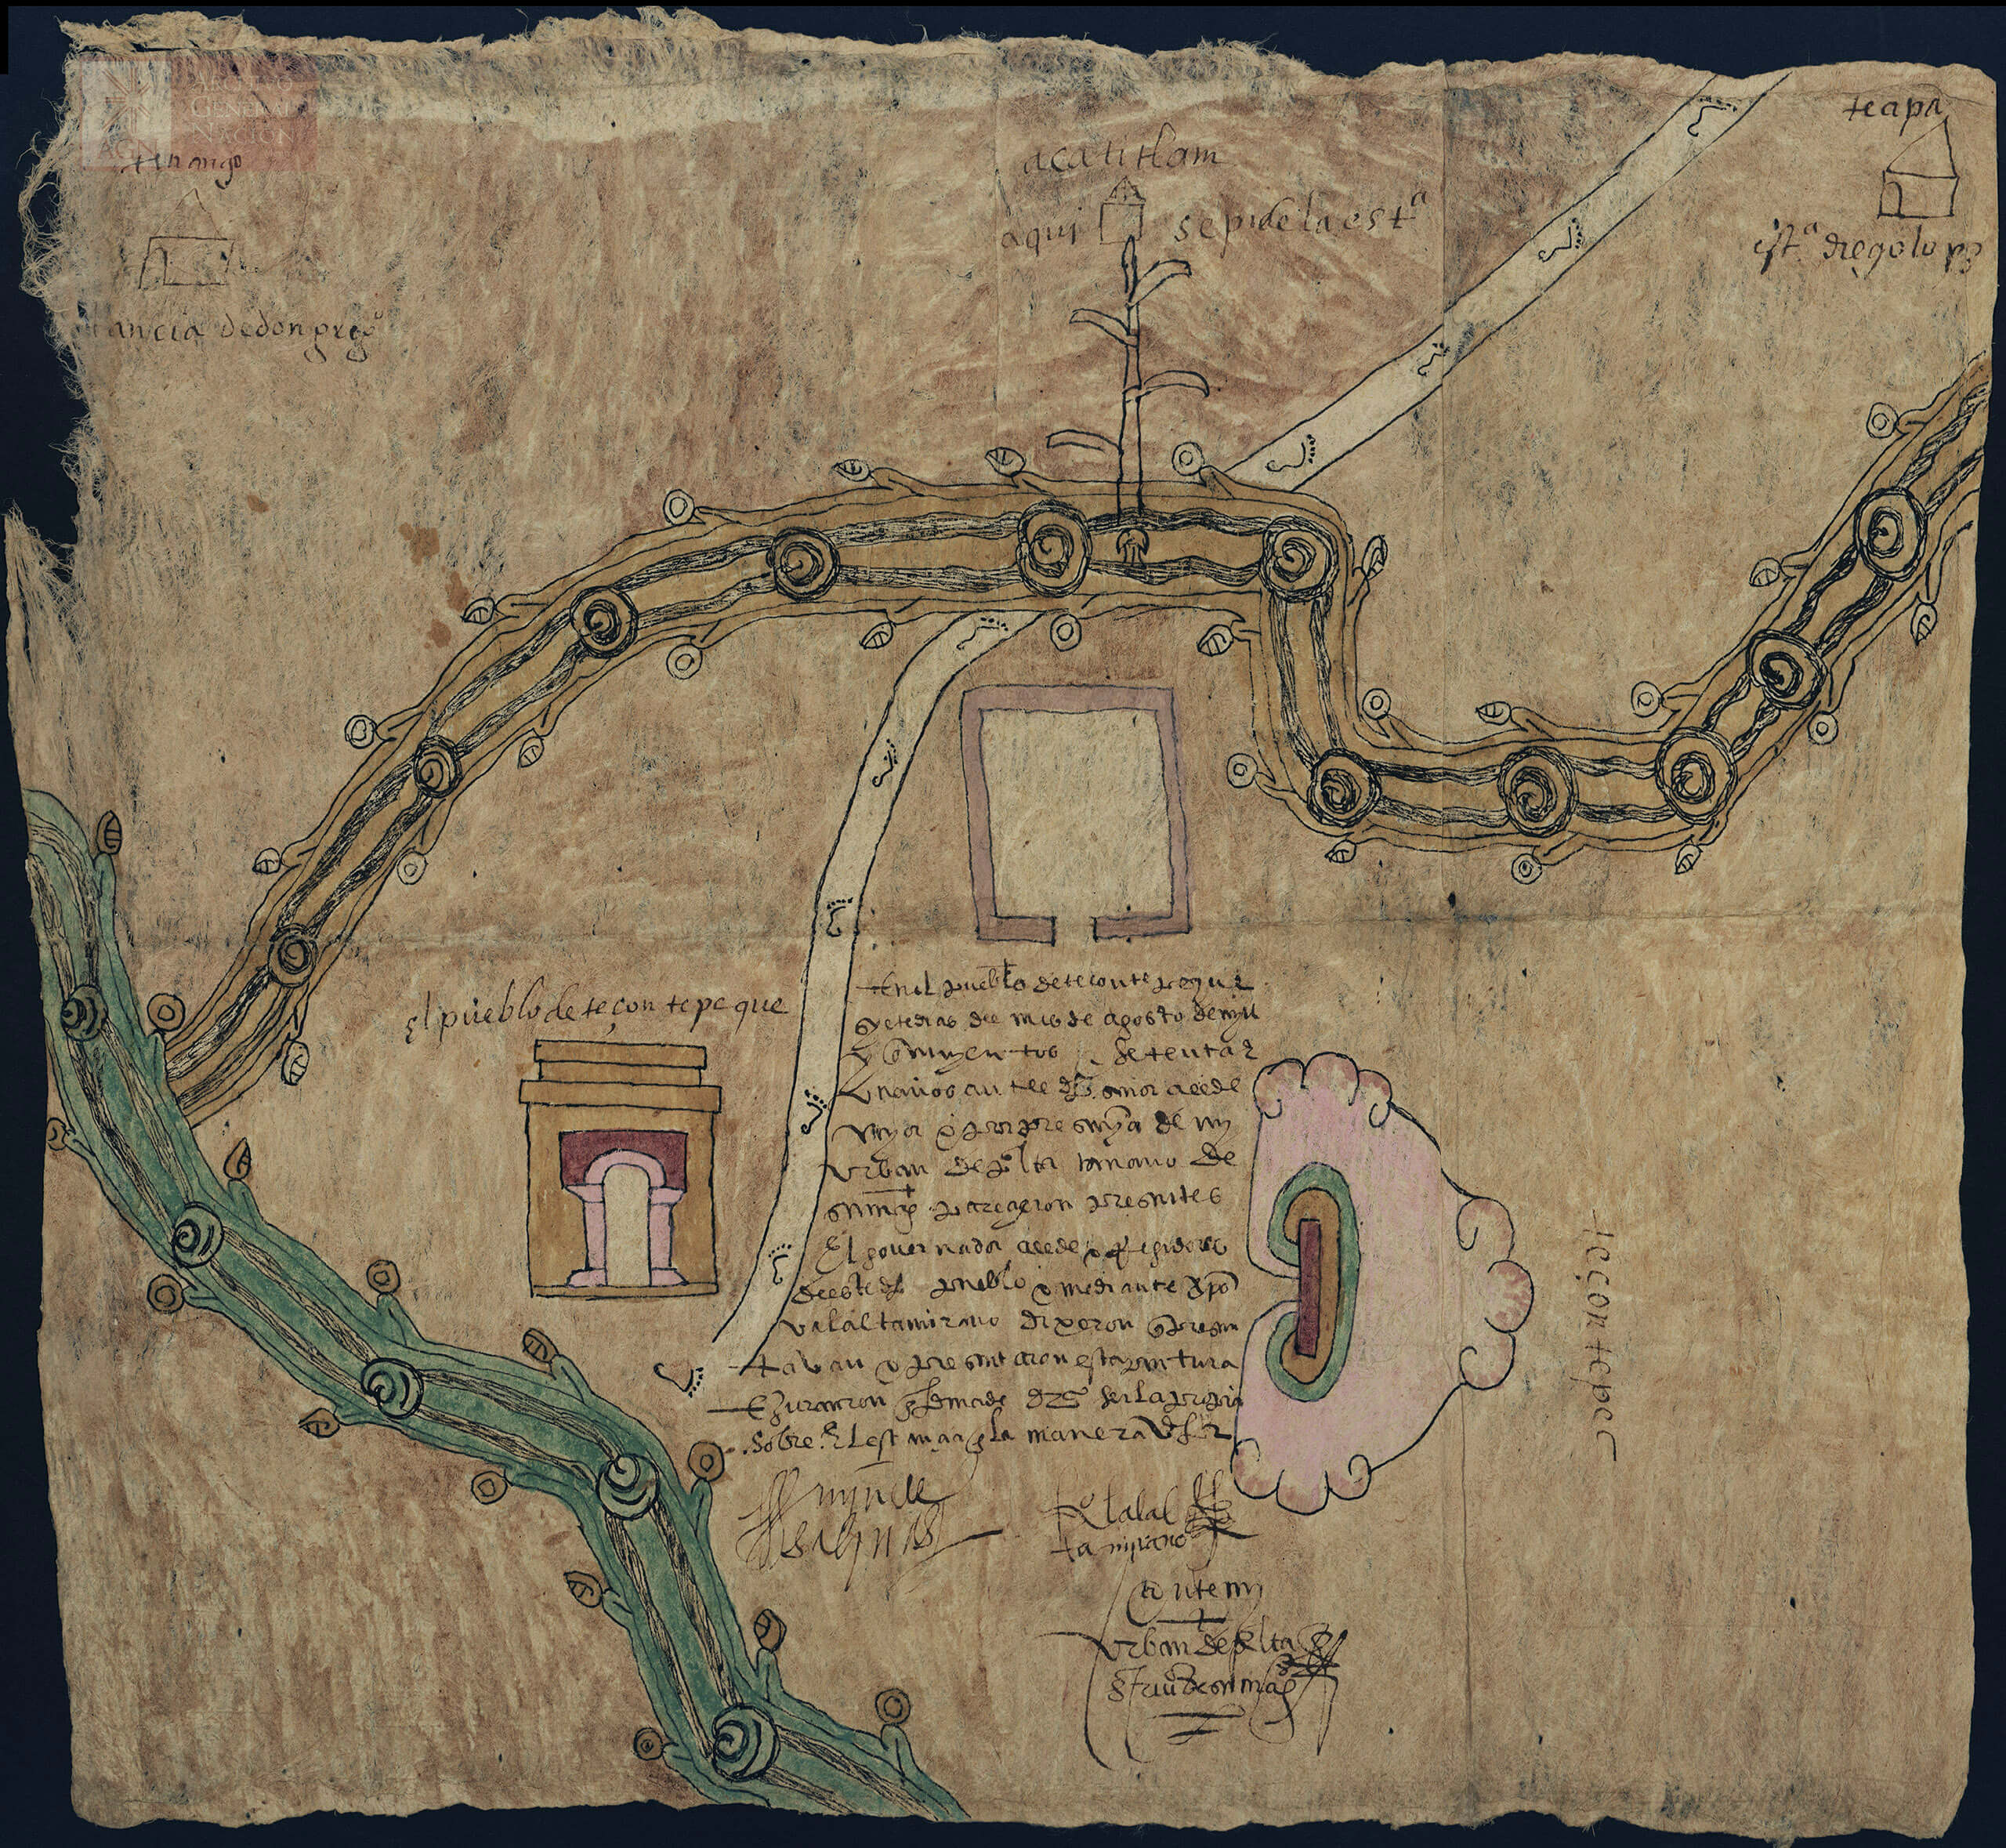 Mapa de Tezontepec, Hidalgo | In Tlilli in Tlapalli. Imágenes de la nueva tierra: identidad indígena después de la conquista | Museo Amparo, Puebla